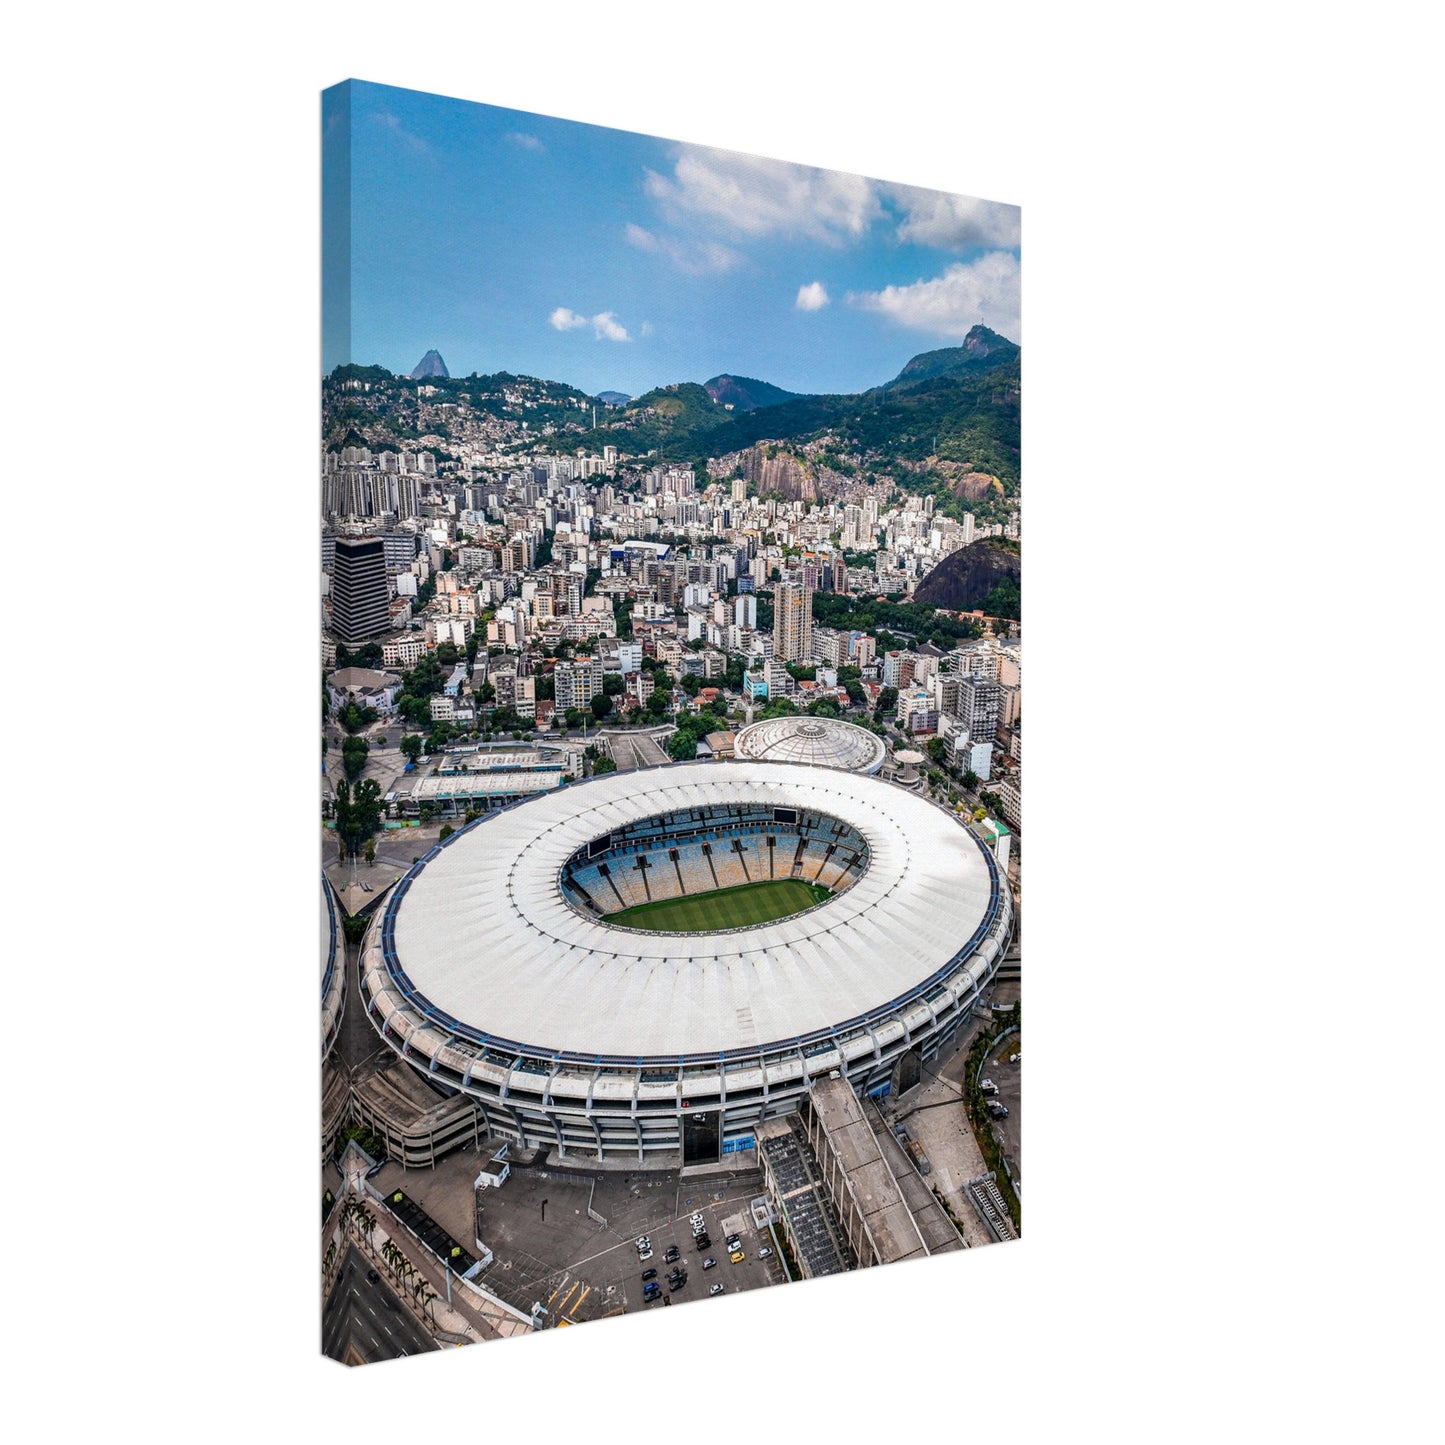 Estádio do Maracanã, Rio de Janeiro Stadium Canvas